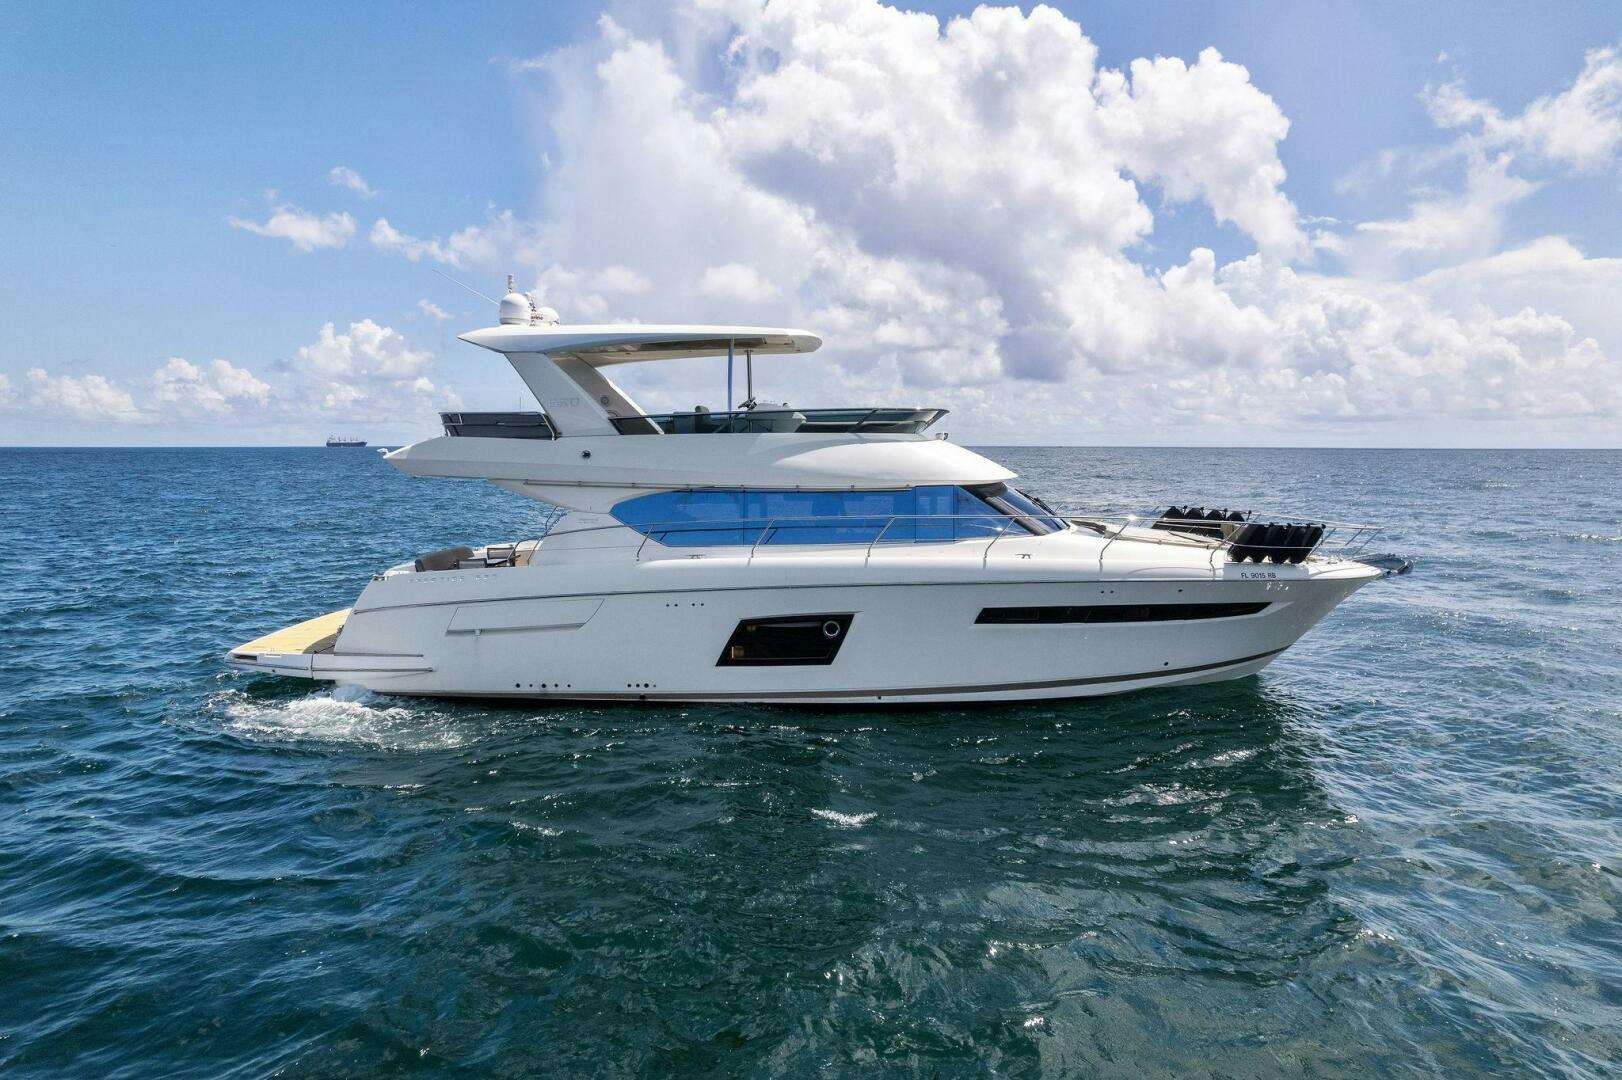 La peque
Yacht for Sale